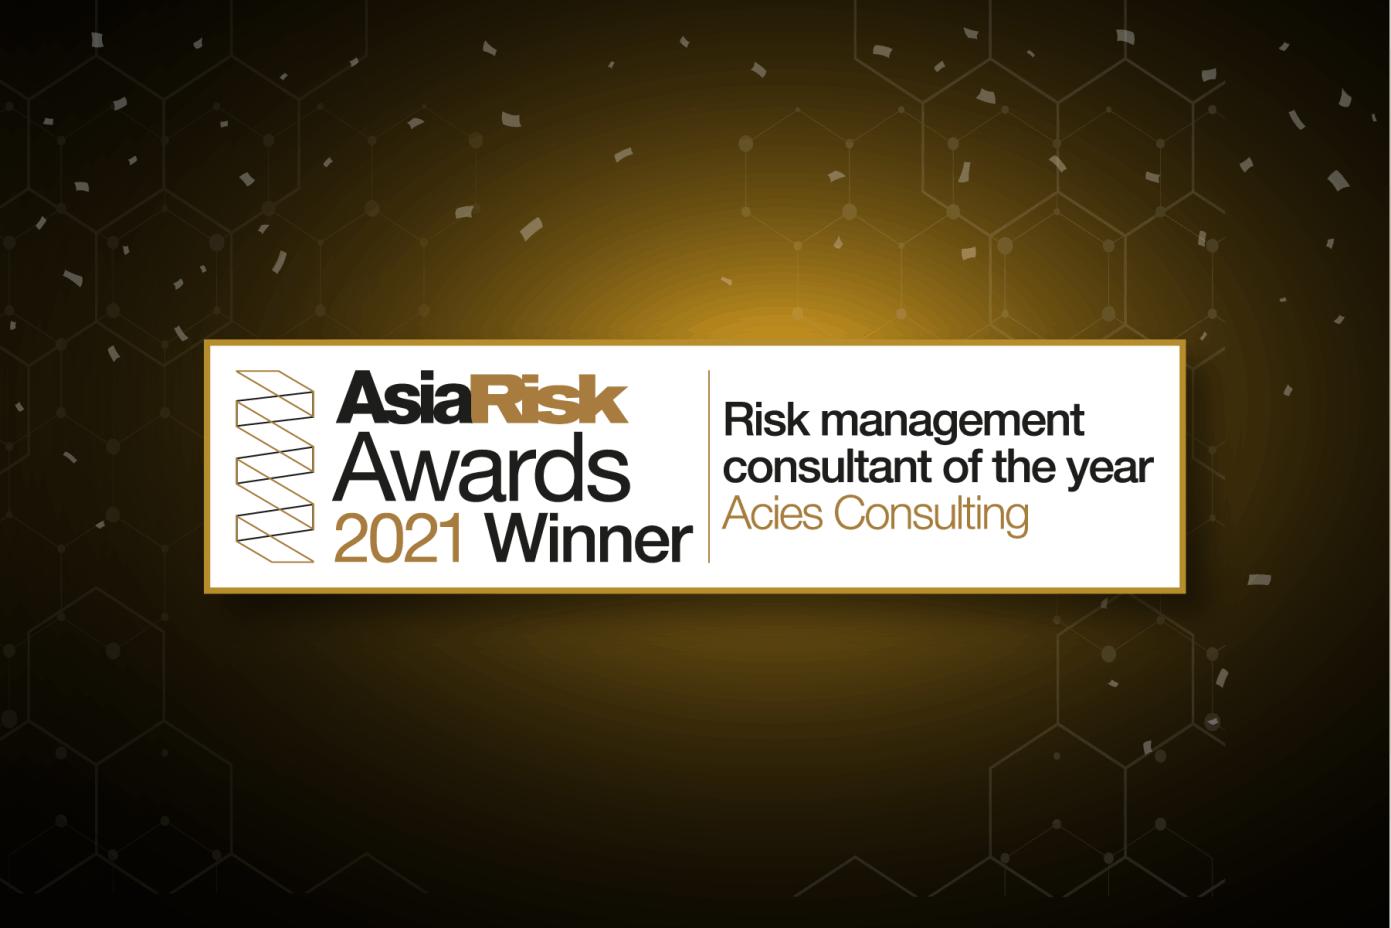 Asia Risk Award